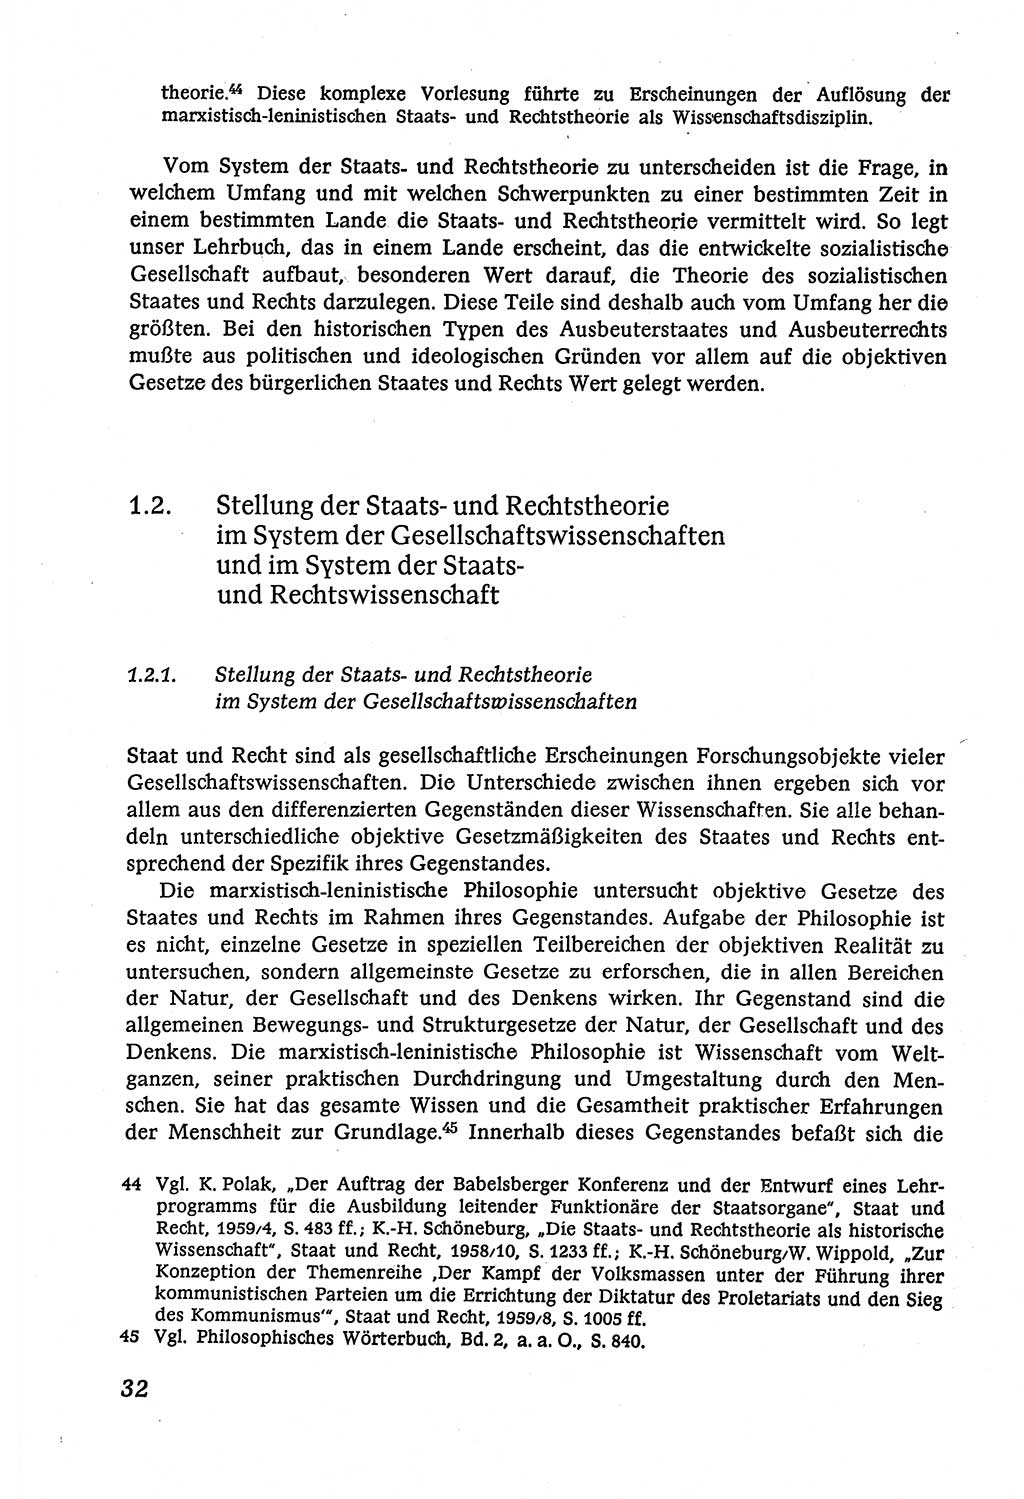 Marxistisch-leninistische (ML) Staats- und Rechtstheorie [Deutsche Demokratische Republik (DDR)], Lehrbuch 1980, Seite 32 (ML St.-R.-Th. DDR Lb. 1980, S. 32)